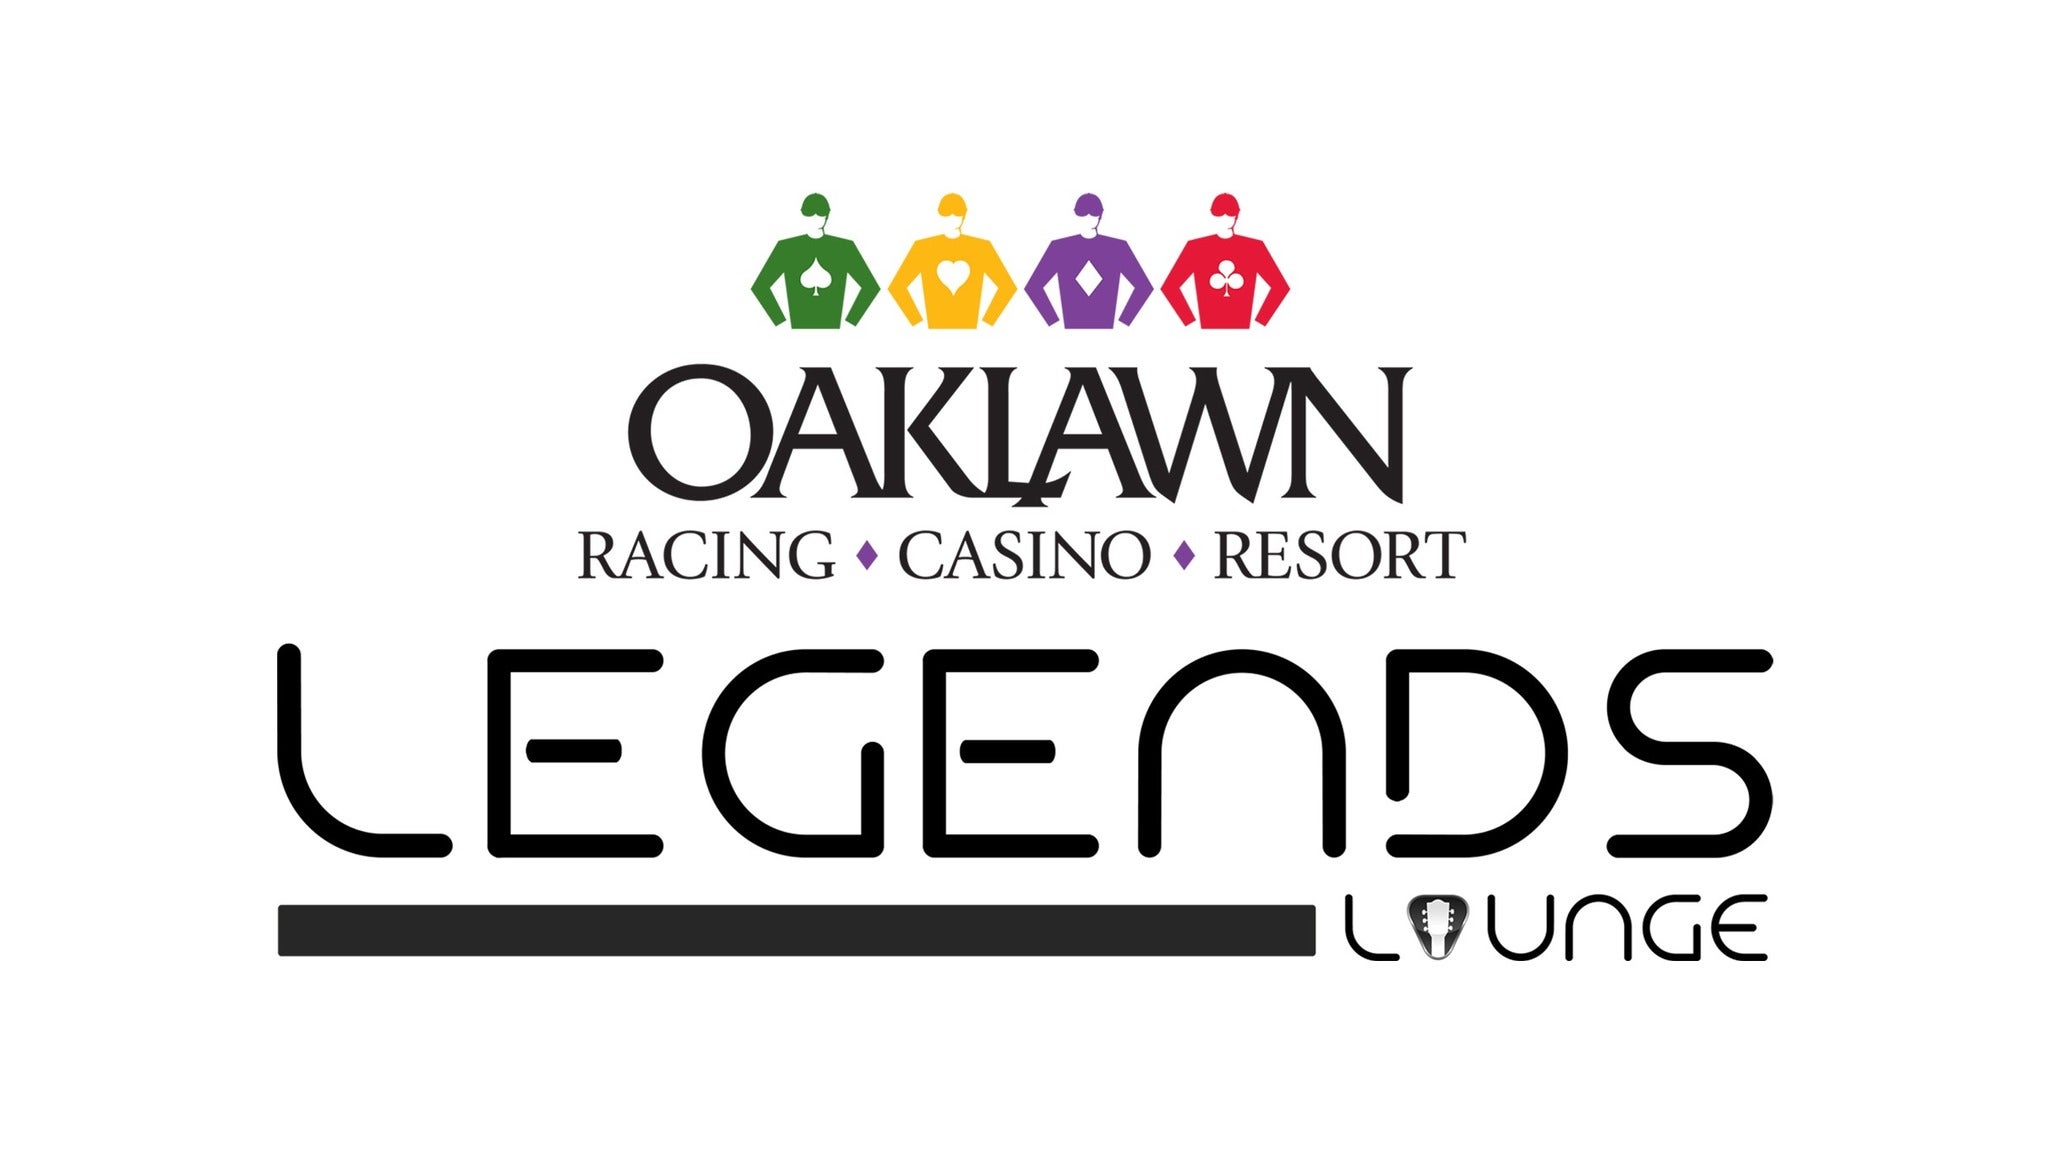 Oaklawn Legends Lounge presale information on freepresalepasswords.com